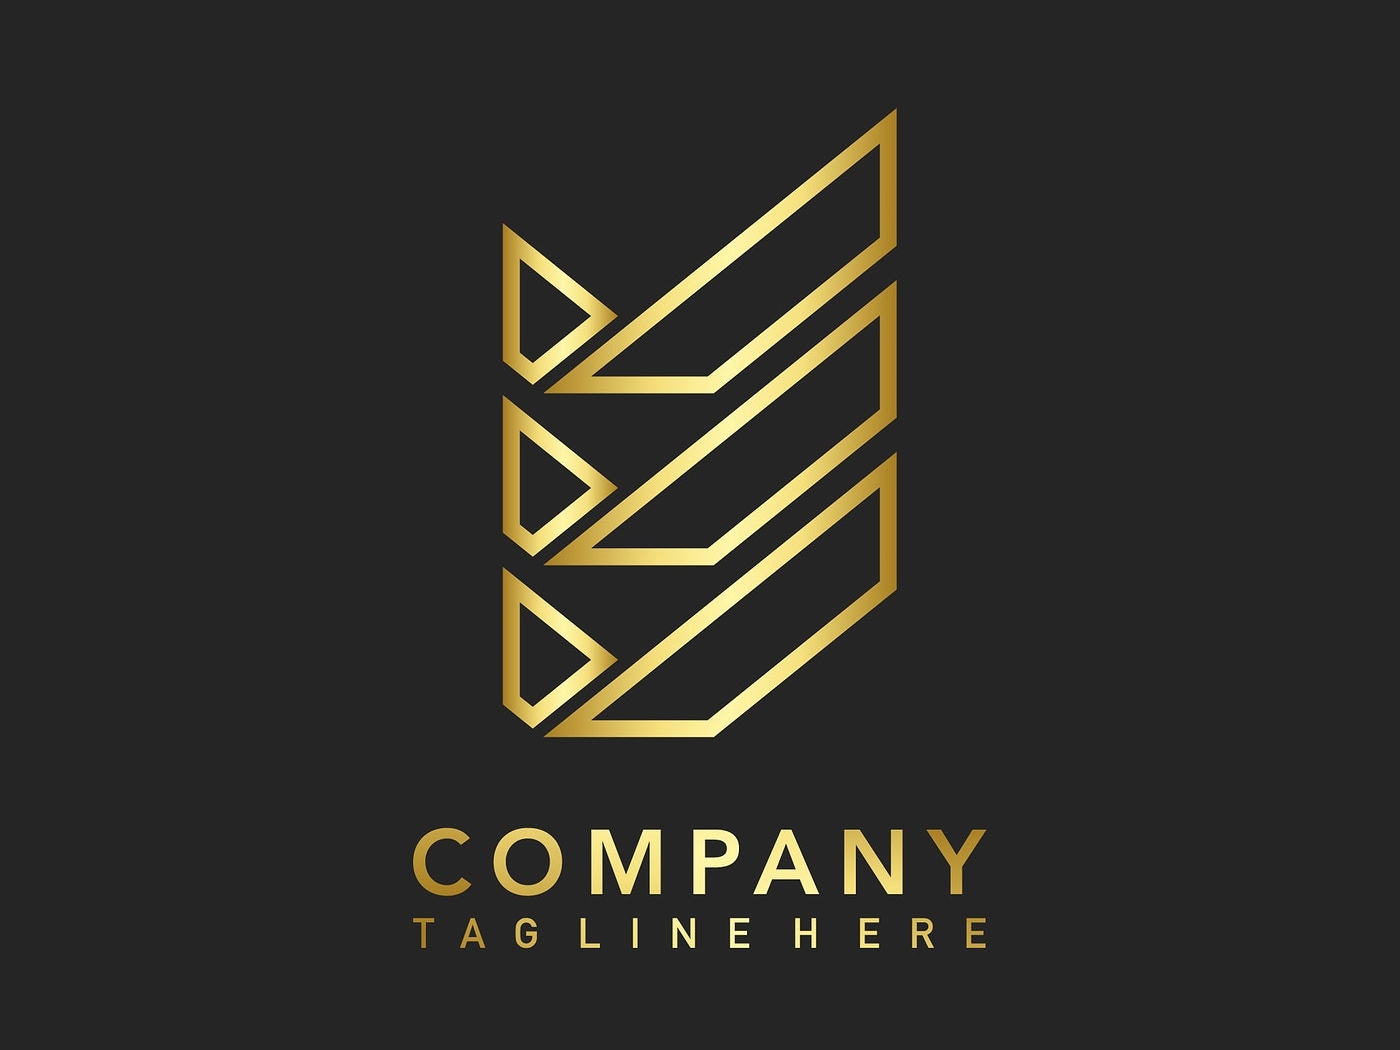 Company Logo by Aew on Dribbble